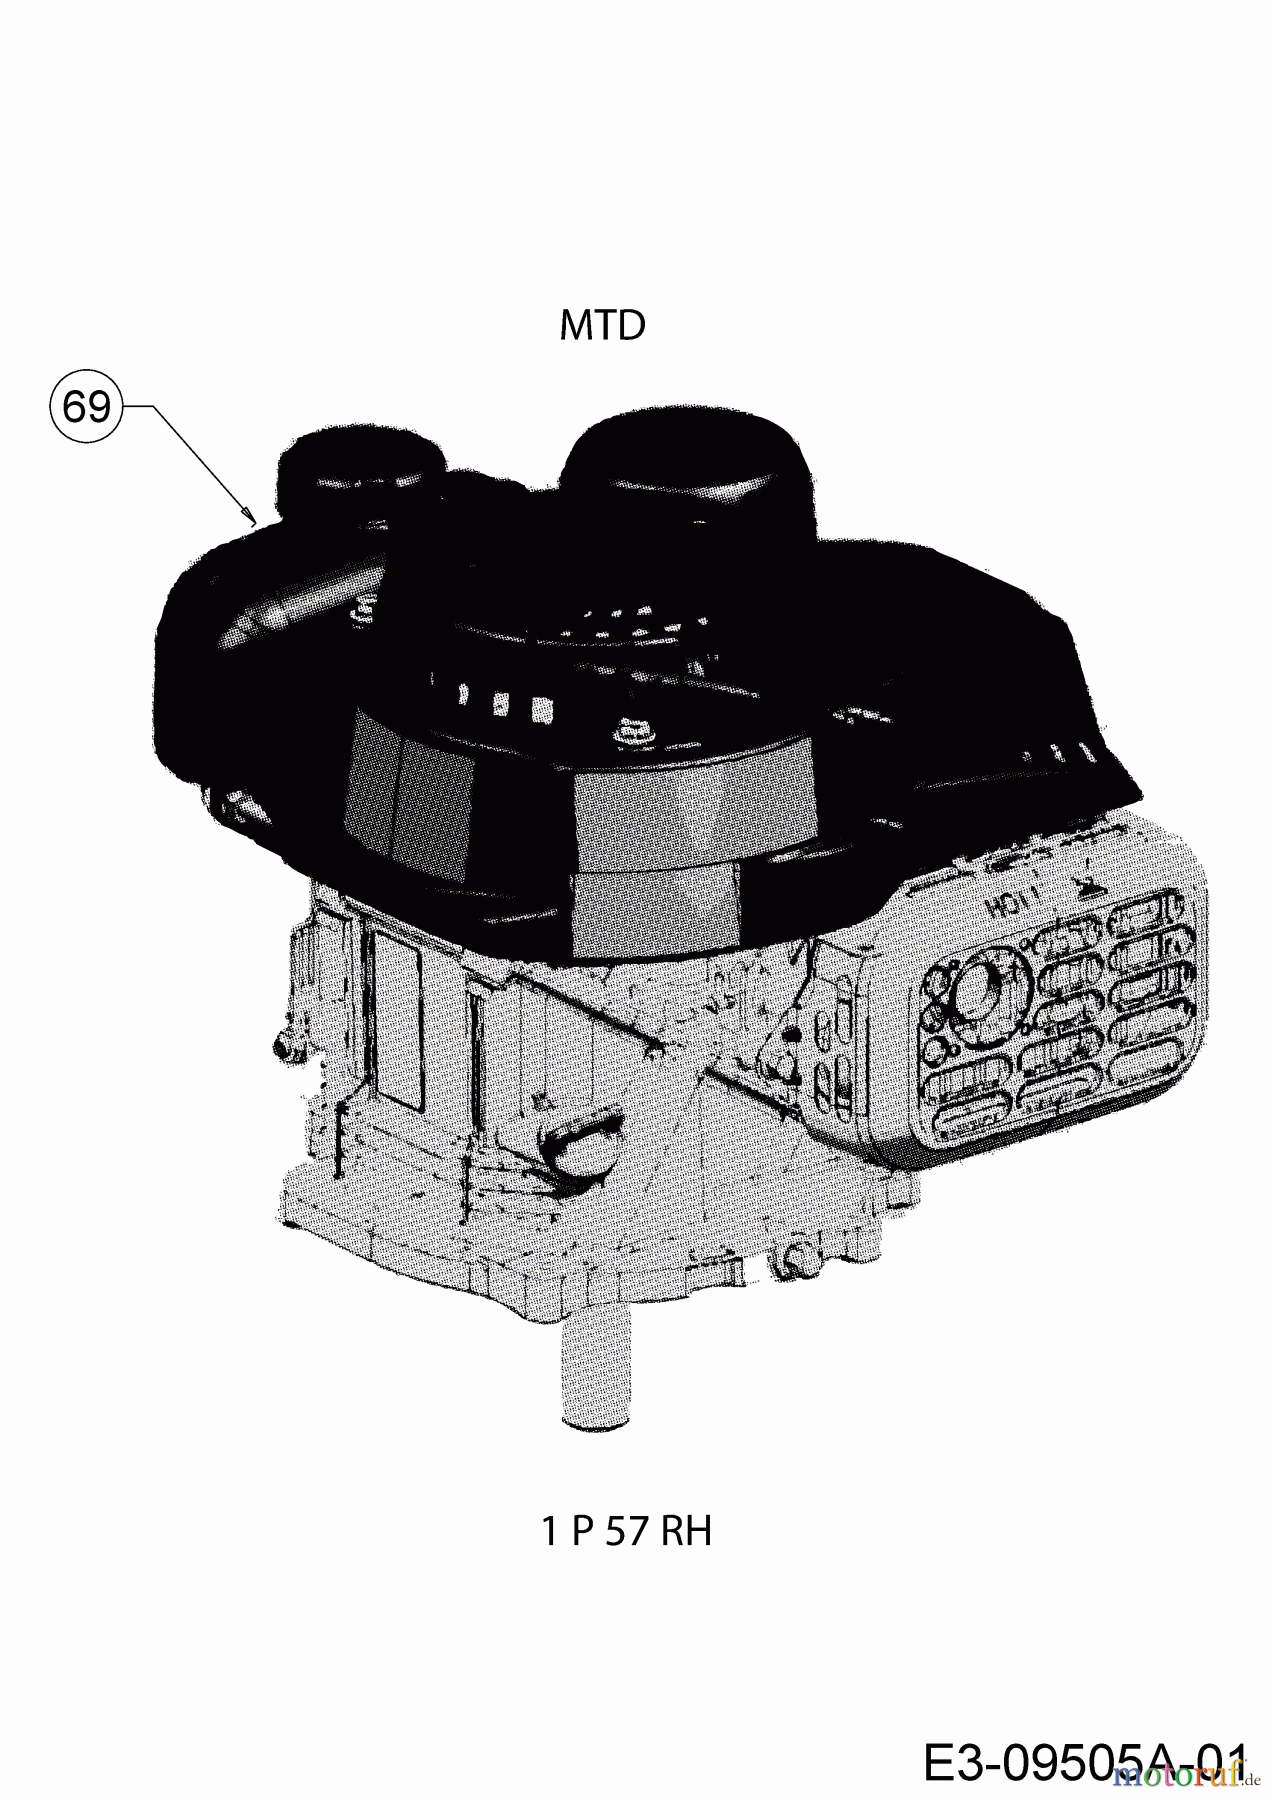  MTD Motormäher MTD 46 11A-J1SJ600  (2020) Motor MTD